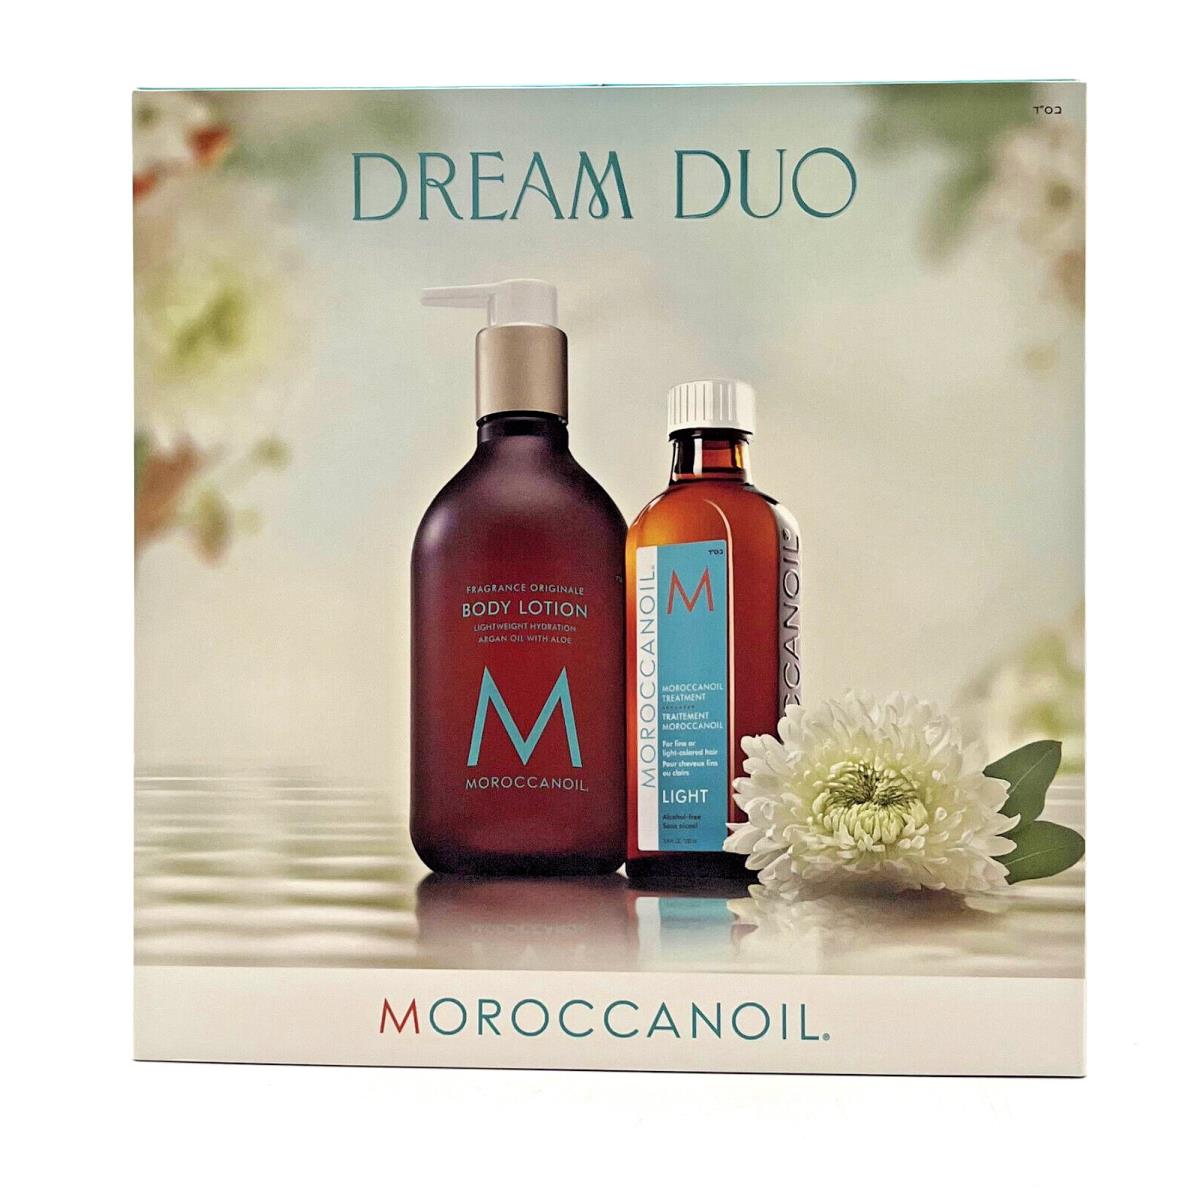 Moroccanoil Dream Duo Body Lotion12.2 oz Light Oil Treatment 3.4 oz